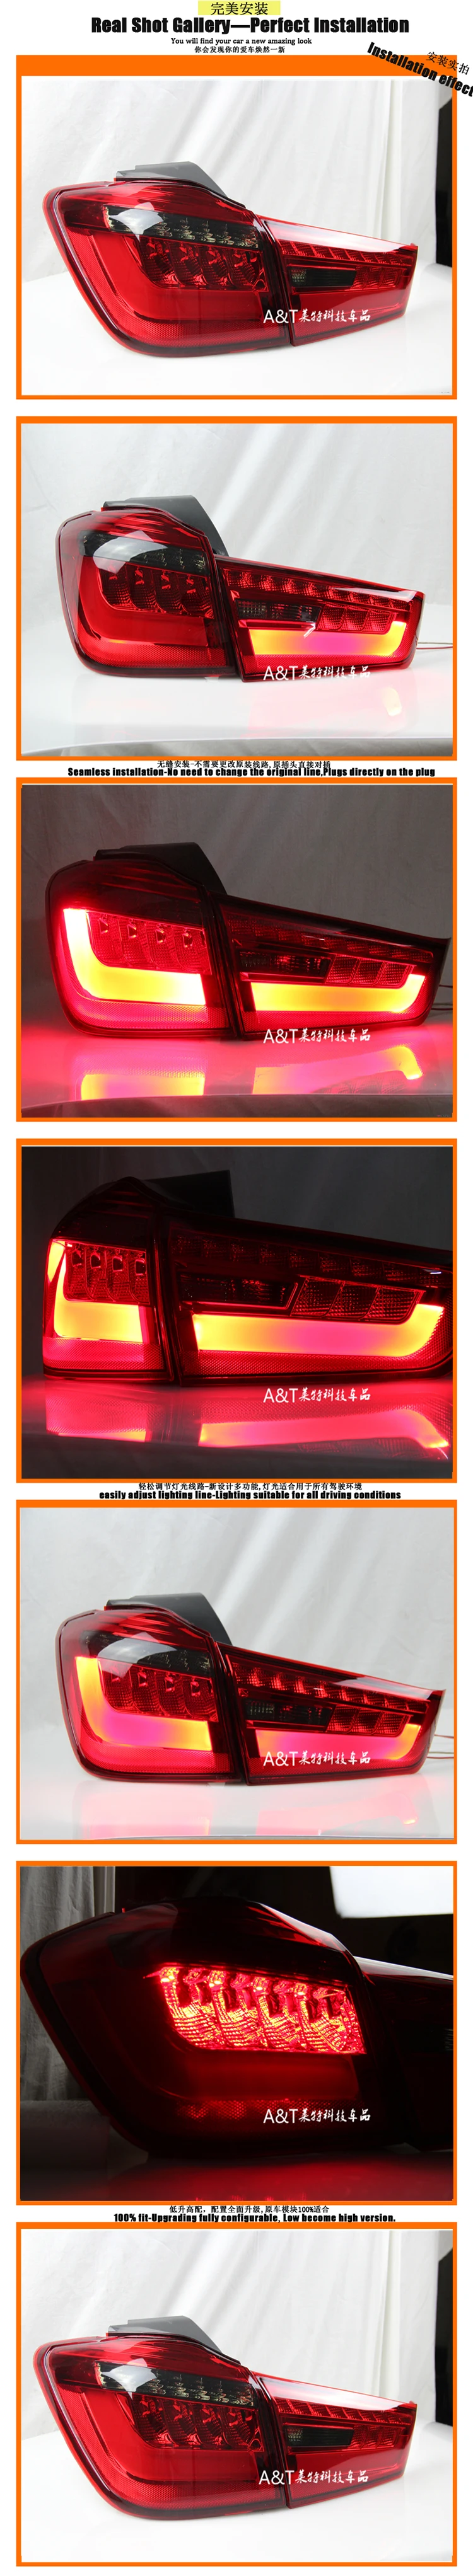 Автомобильный Стайлинг для Mitsubishi ASX задний светильник s 2013- для ASX светодиодный задний фонарь противотуманный светильник DRL+ тормоз+ Парк+ сигнальный светильник s светодиодный